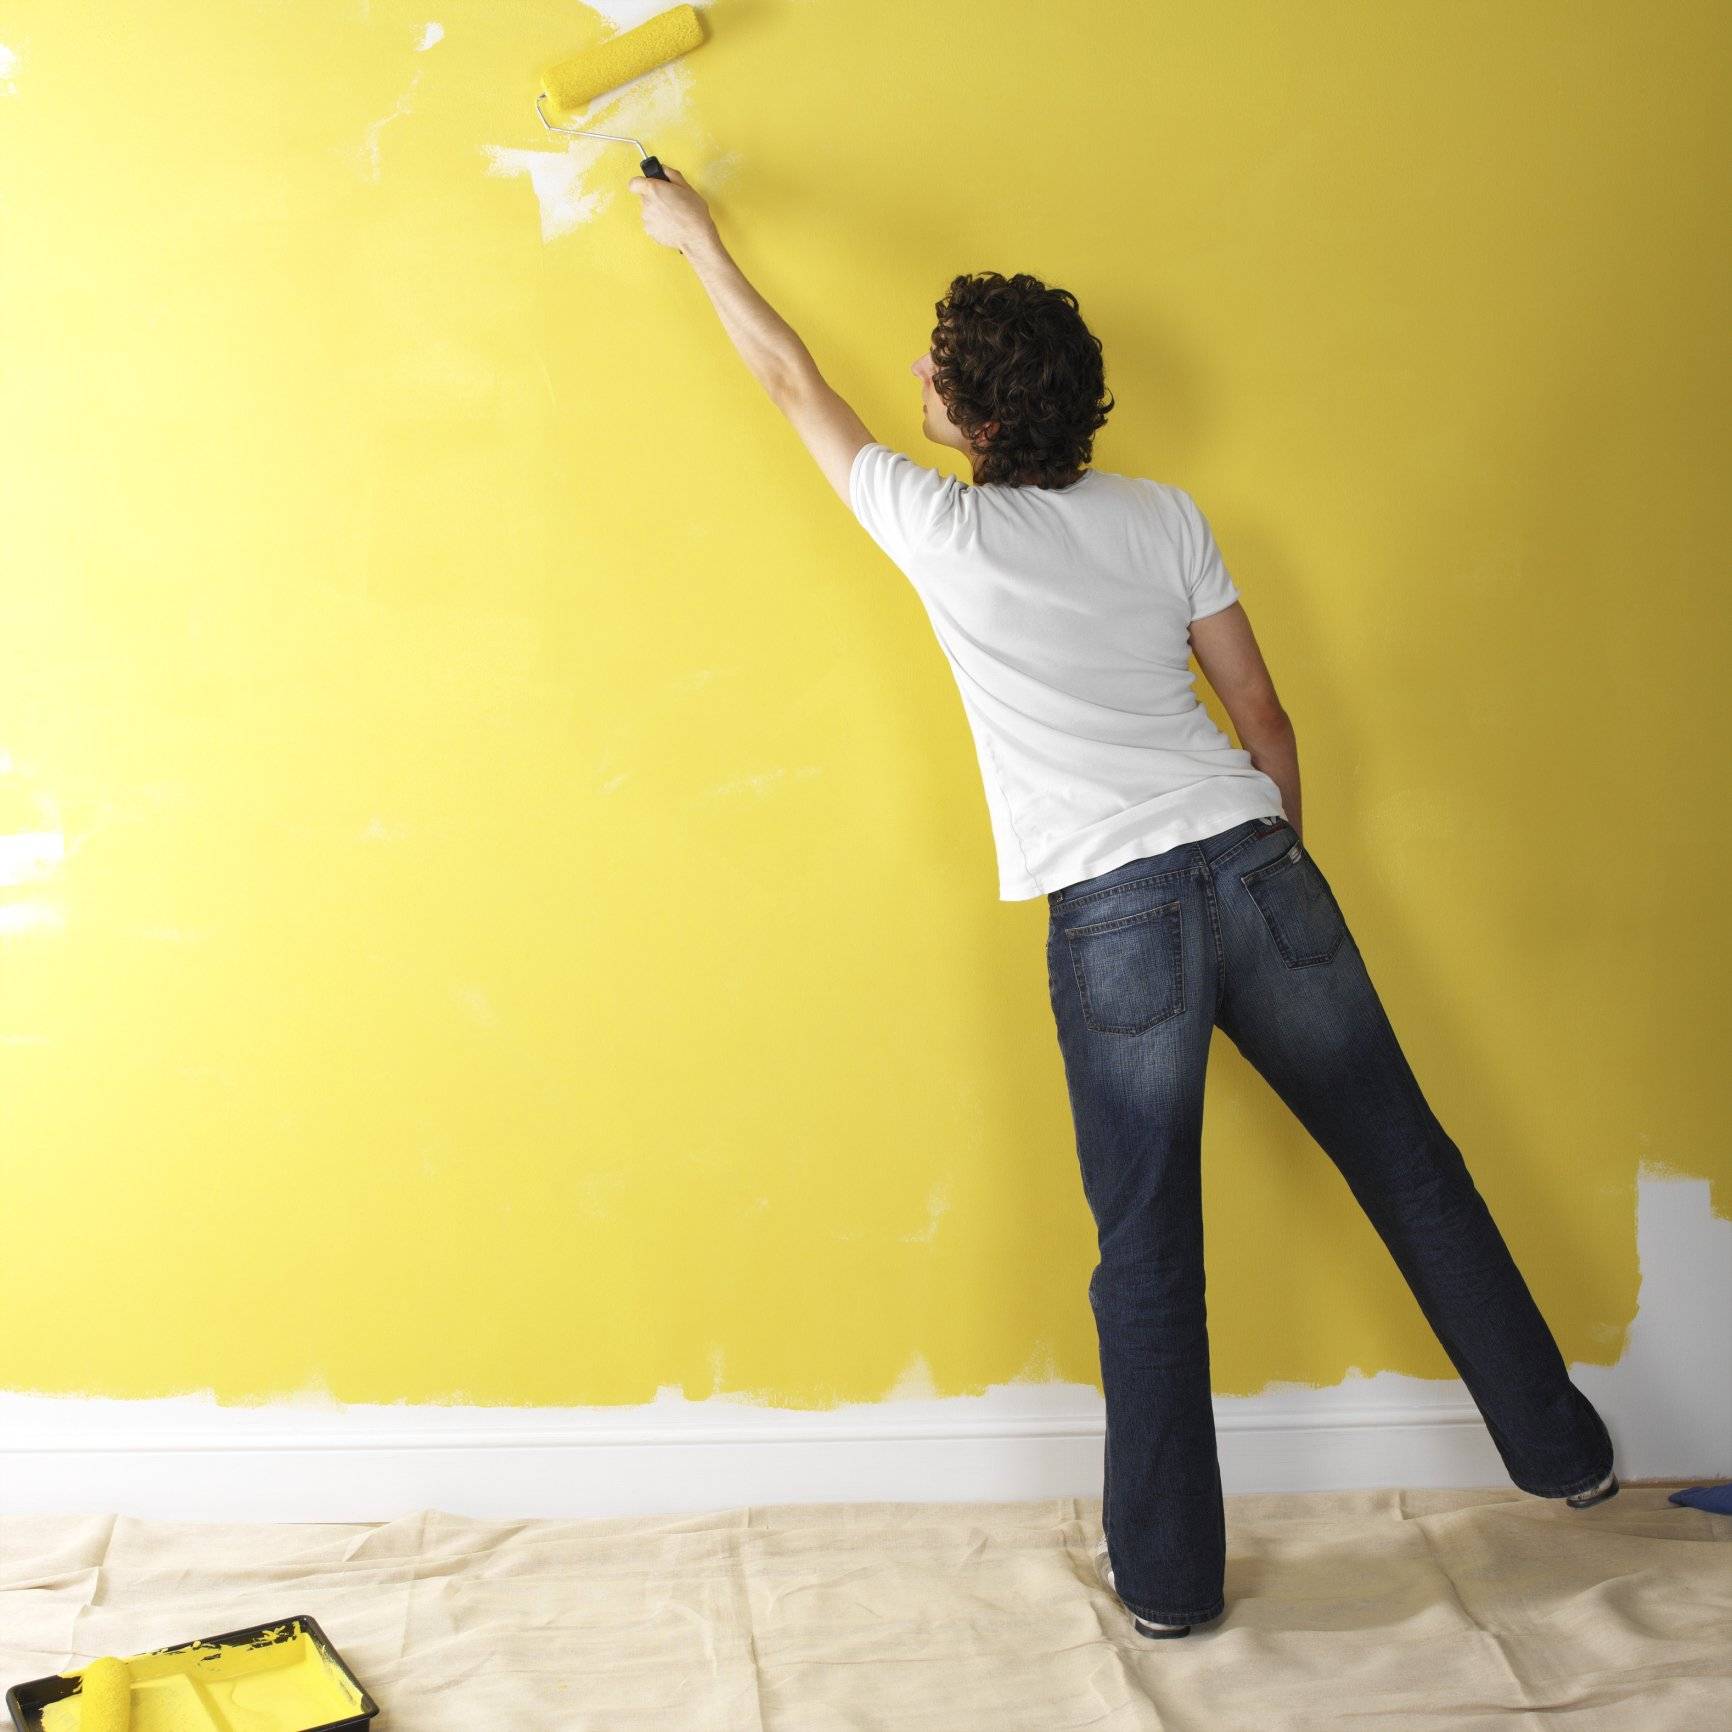 Обои или покраска стен: что лучше, дешевле и практичней